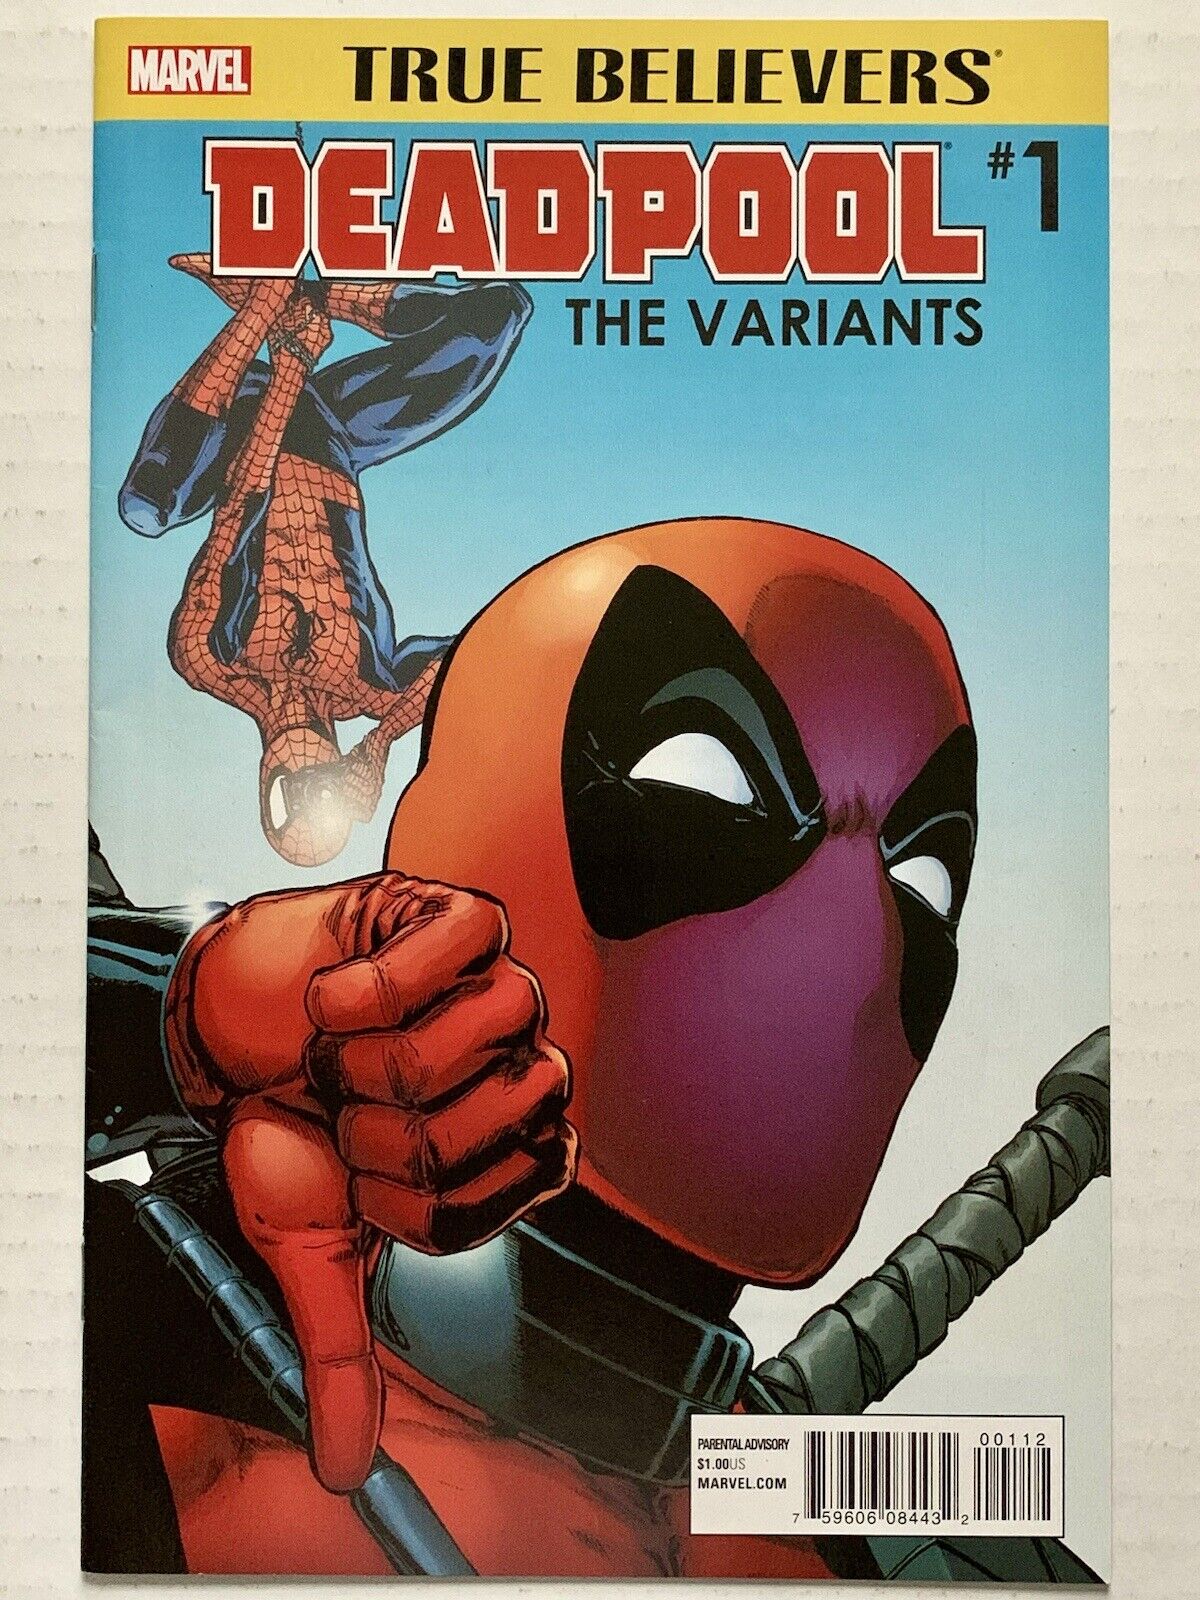 True Believers: Deadpool #1 (2016) The Variants (NM/9.4) Cover Gallery -VINTAGE